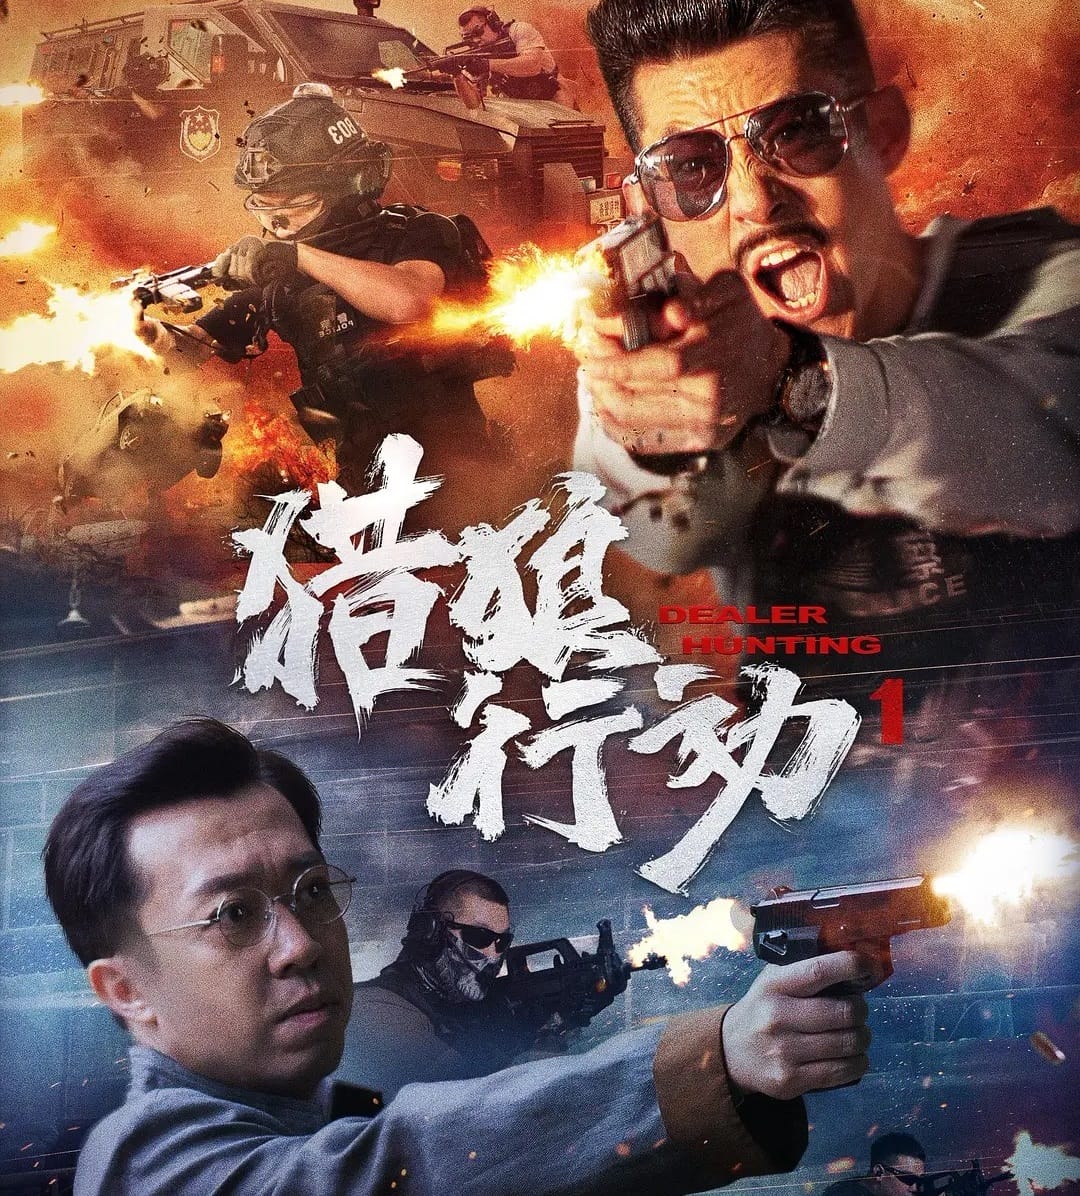 หนังจีน Dealer Hunting (2022) ล่าท้าตาย (ซับไทย)